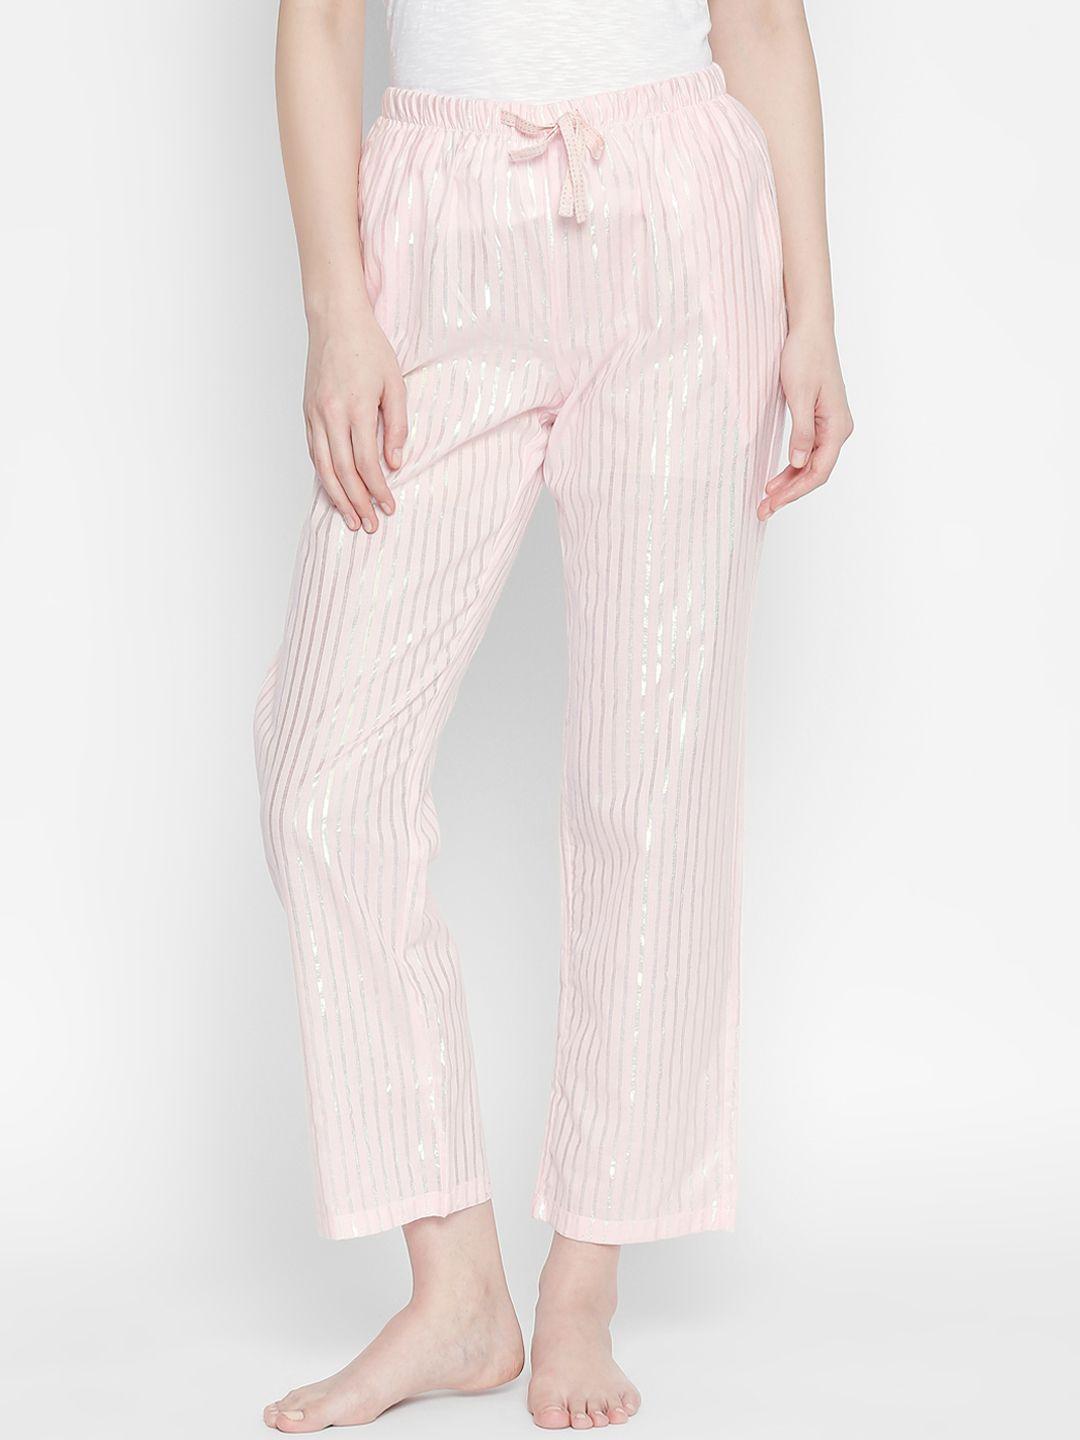 dreamz by pantaloons women pink striped lounge pants